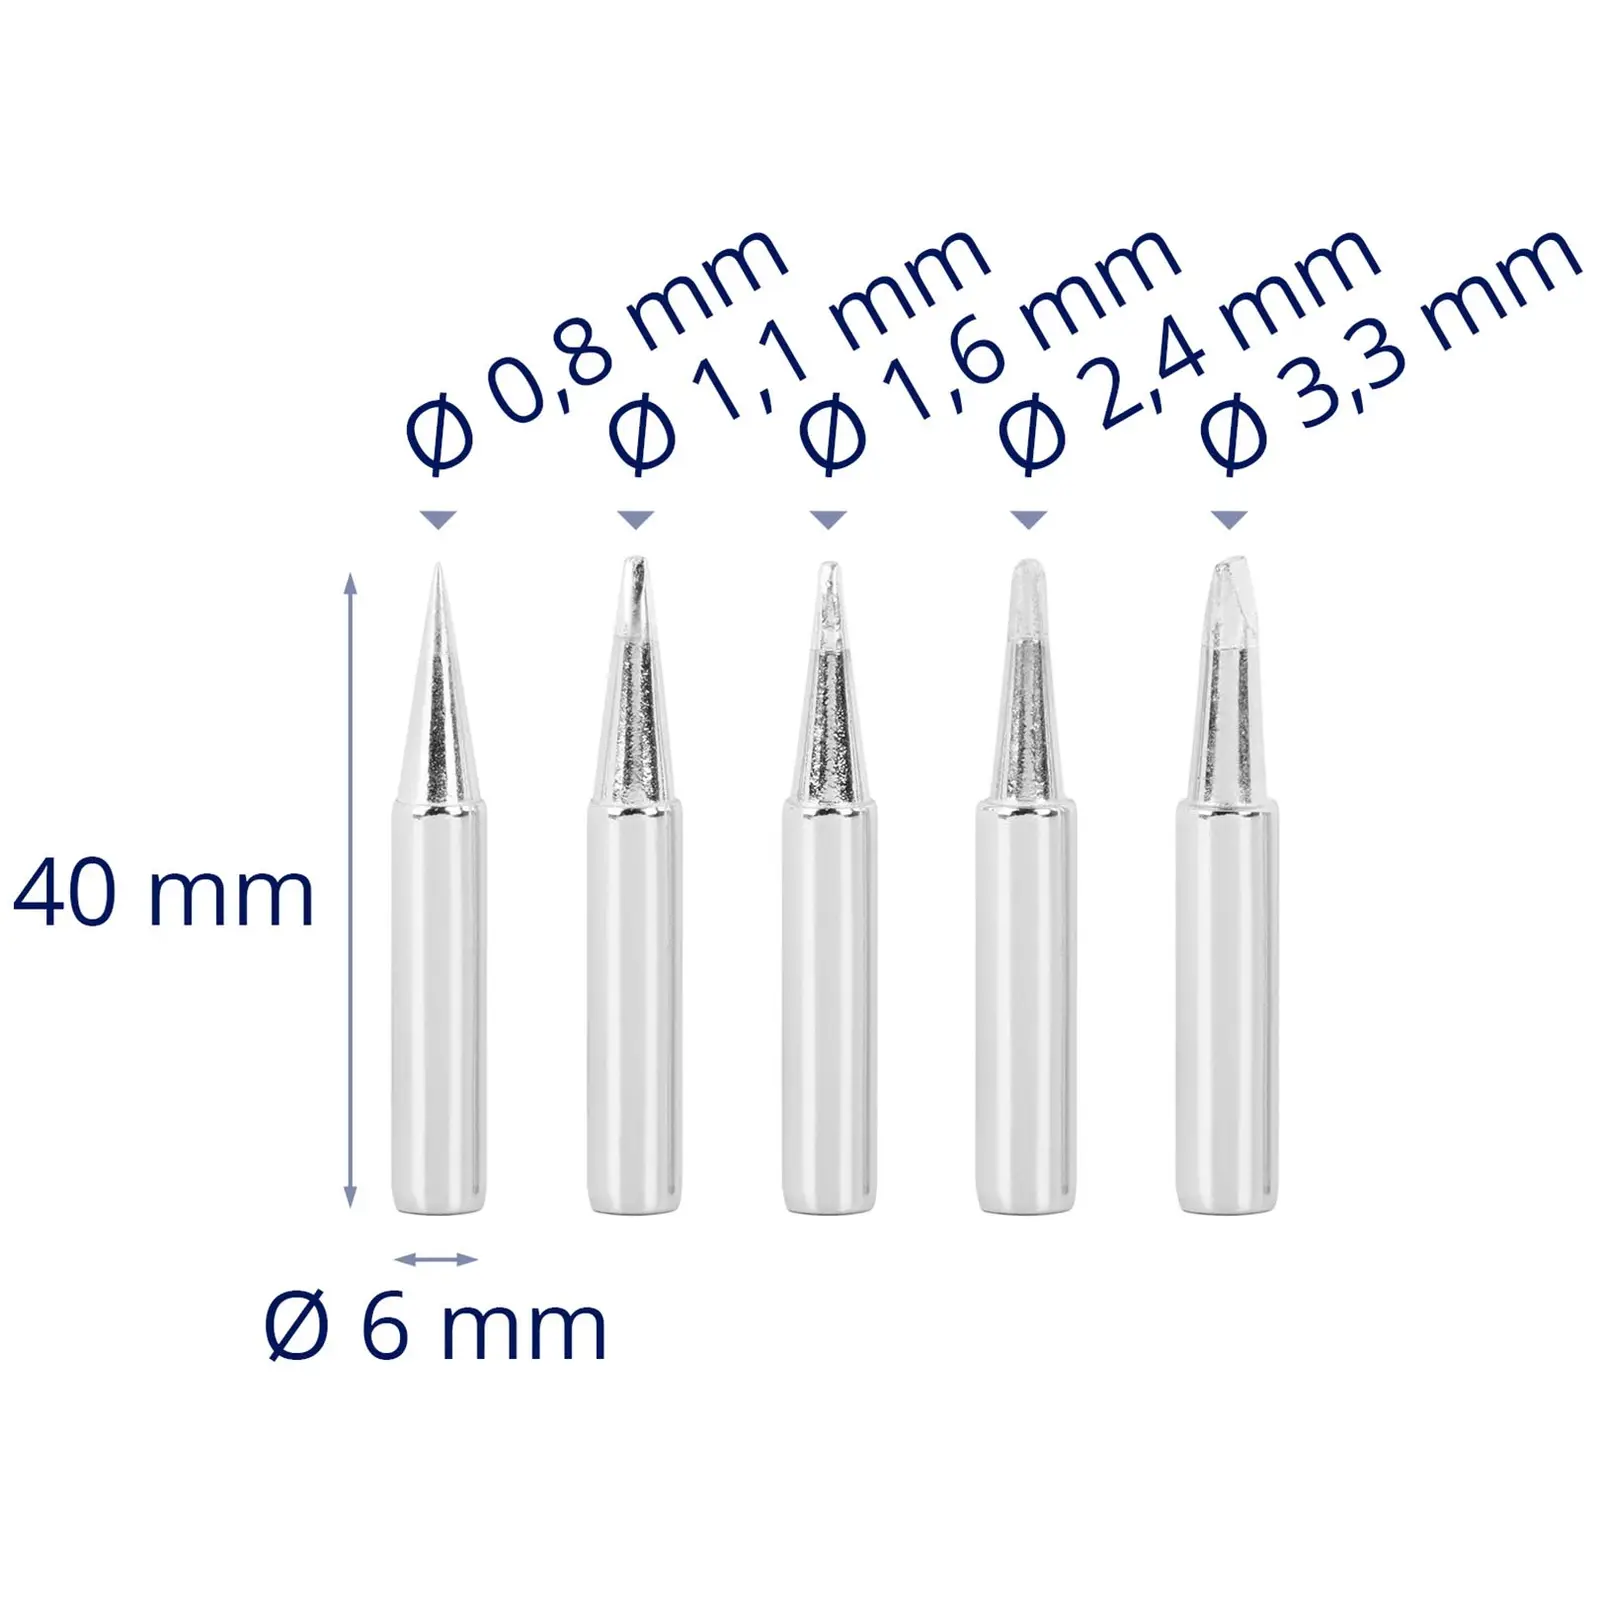 Pontas de ferros de solda - cónicos - 0,8-3,3 mm